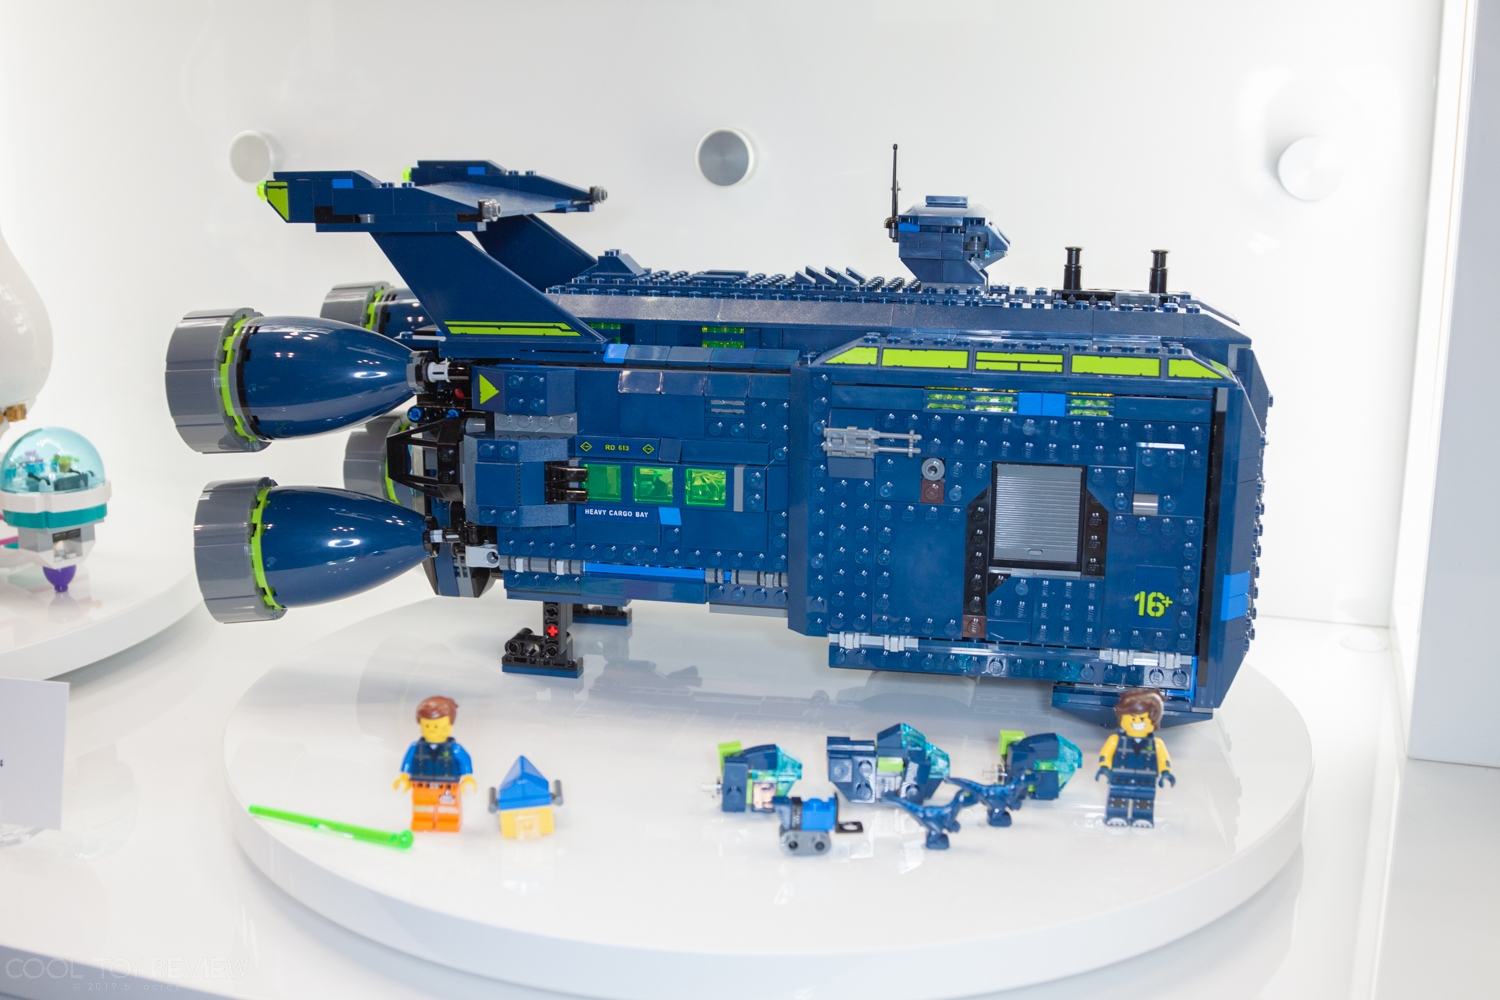 LEGO-Toy-Fair-2019-142.jpg